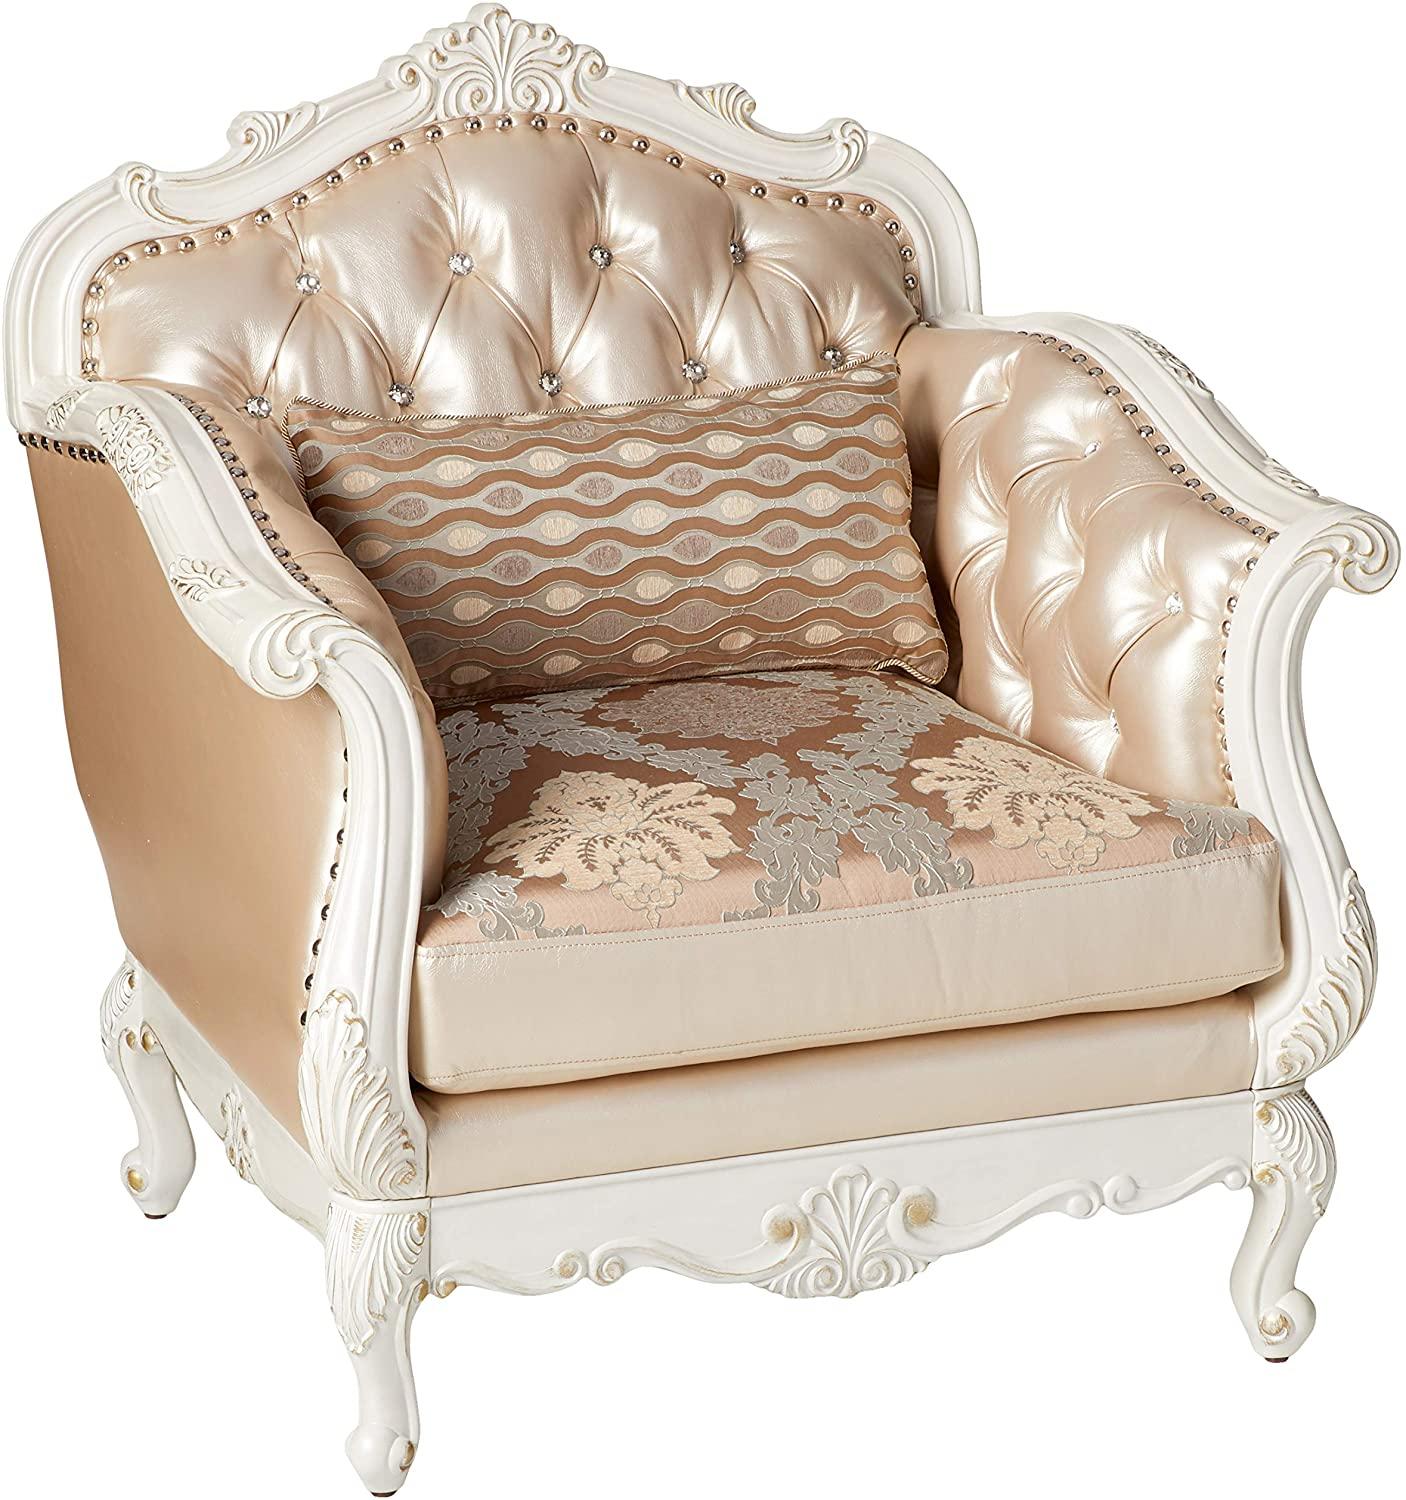 

        
Acme Furniture Chantelle 53540 Sofa Love Chair Pearl White/Platinum Fabric 00840412013591
